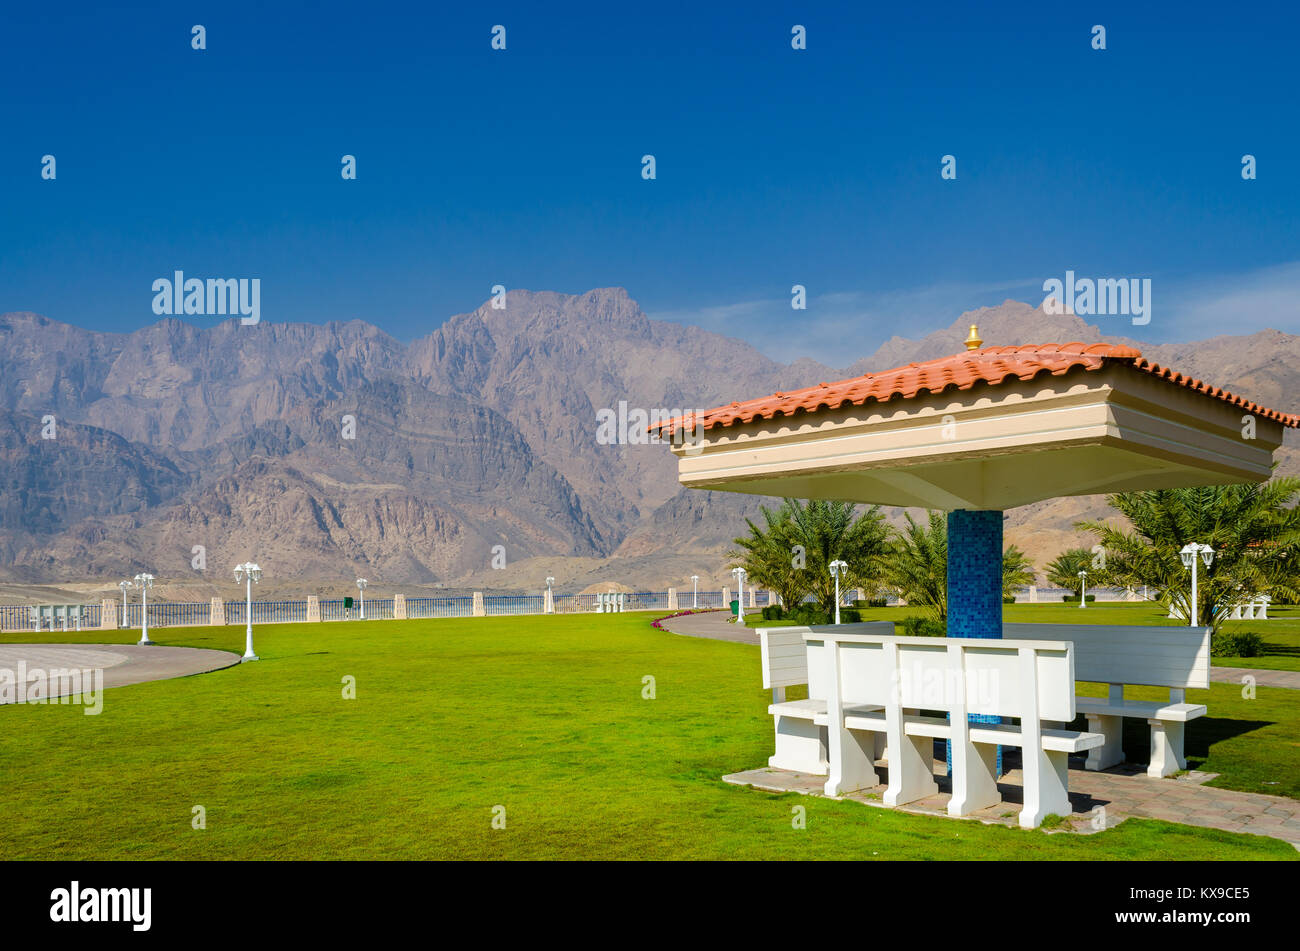 Überdachte Bänke für ein idealer Picknickplatz mit grünen Rasen mit Bergen und einem klaren blauen Himmel im Hintergrund. Stockfoto